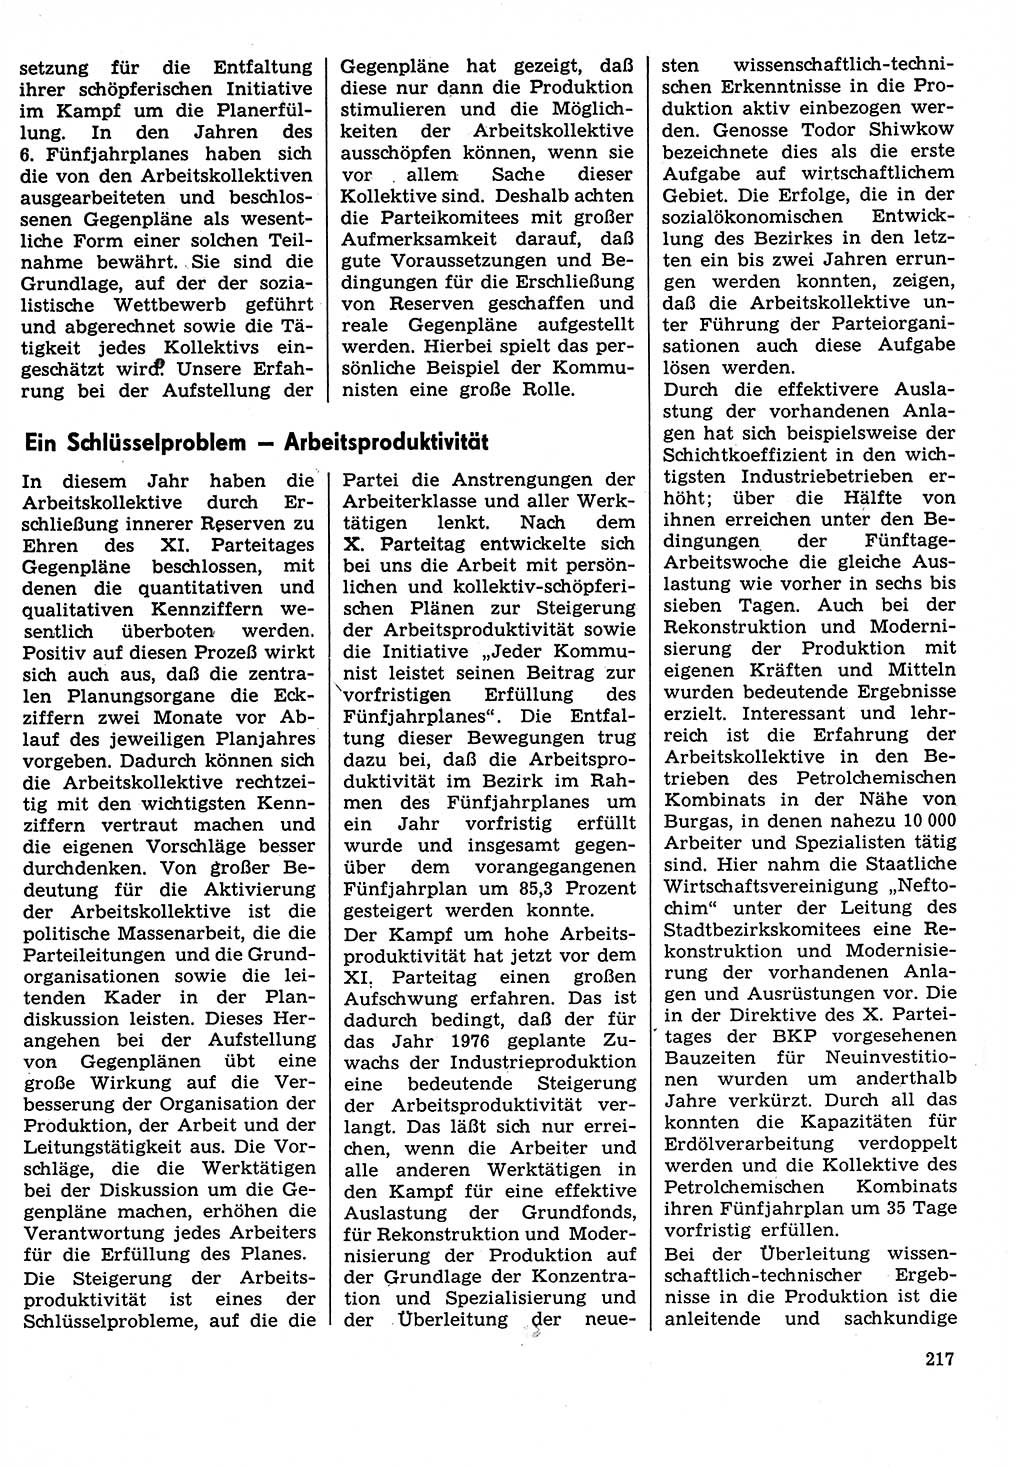 Neuer Weg (NW), Organ des Zentralkomitees (ZK) der SED (Sozialistische Einheitspartei Deutschlands) für Fragen des Parteilebens, 31. Jahrgang [Deutsche Demokratische Republik (DDR)] 1976, Seite 217 (NW ZK SED DDR 1976, S. 217)